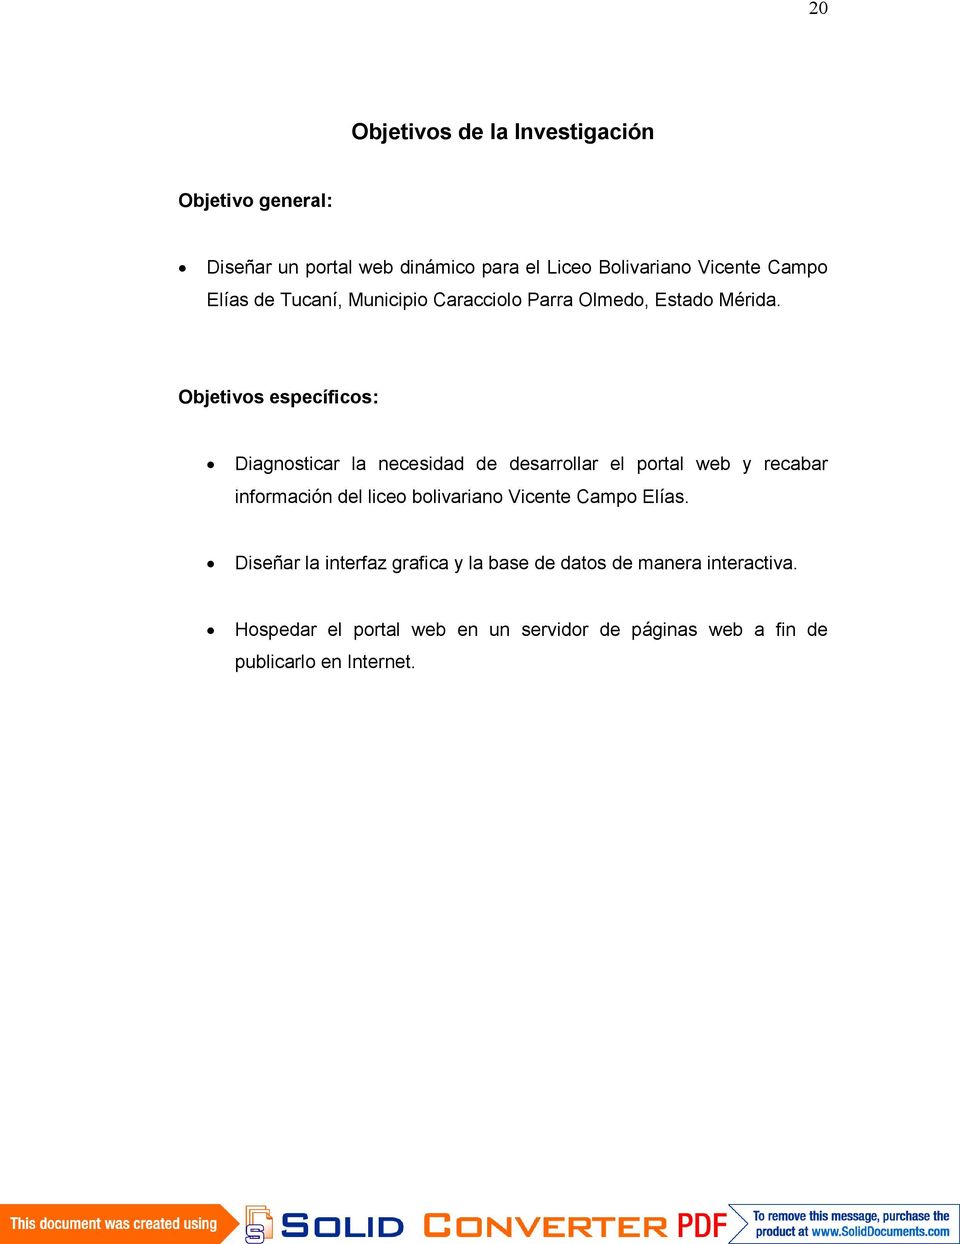 Objetivos específicos: Diagnosticar la necesidad de desarrollar el portal web y recabar información del liceo bolivariano